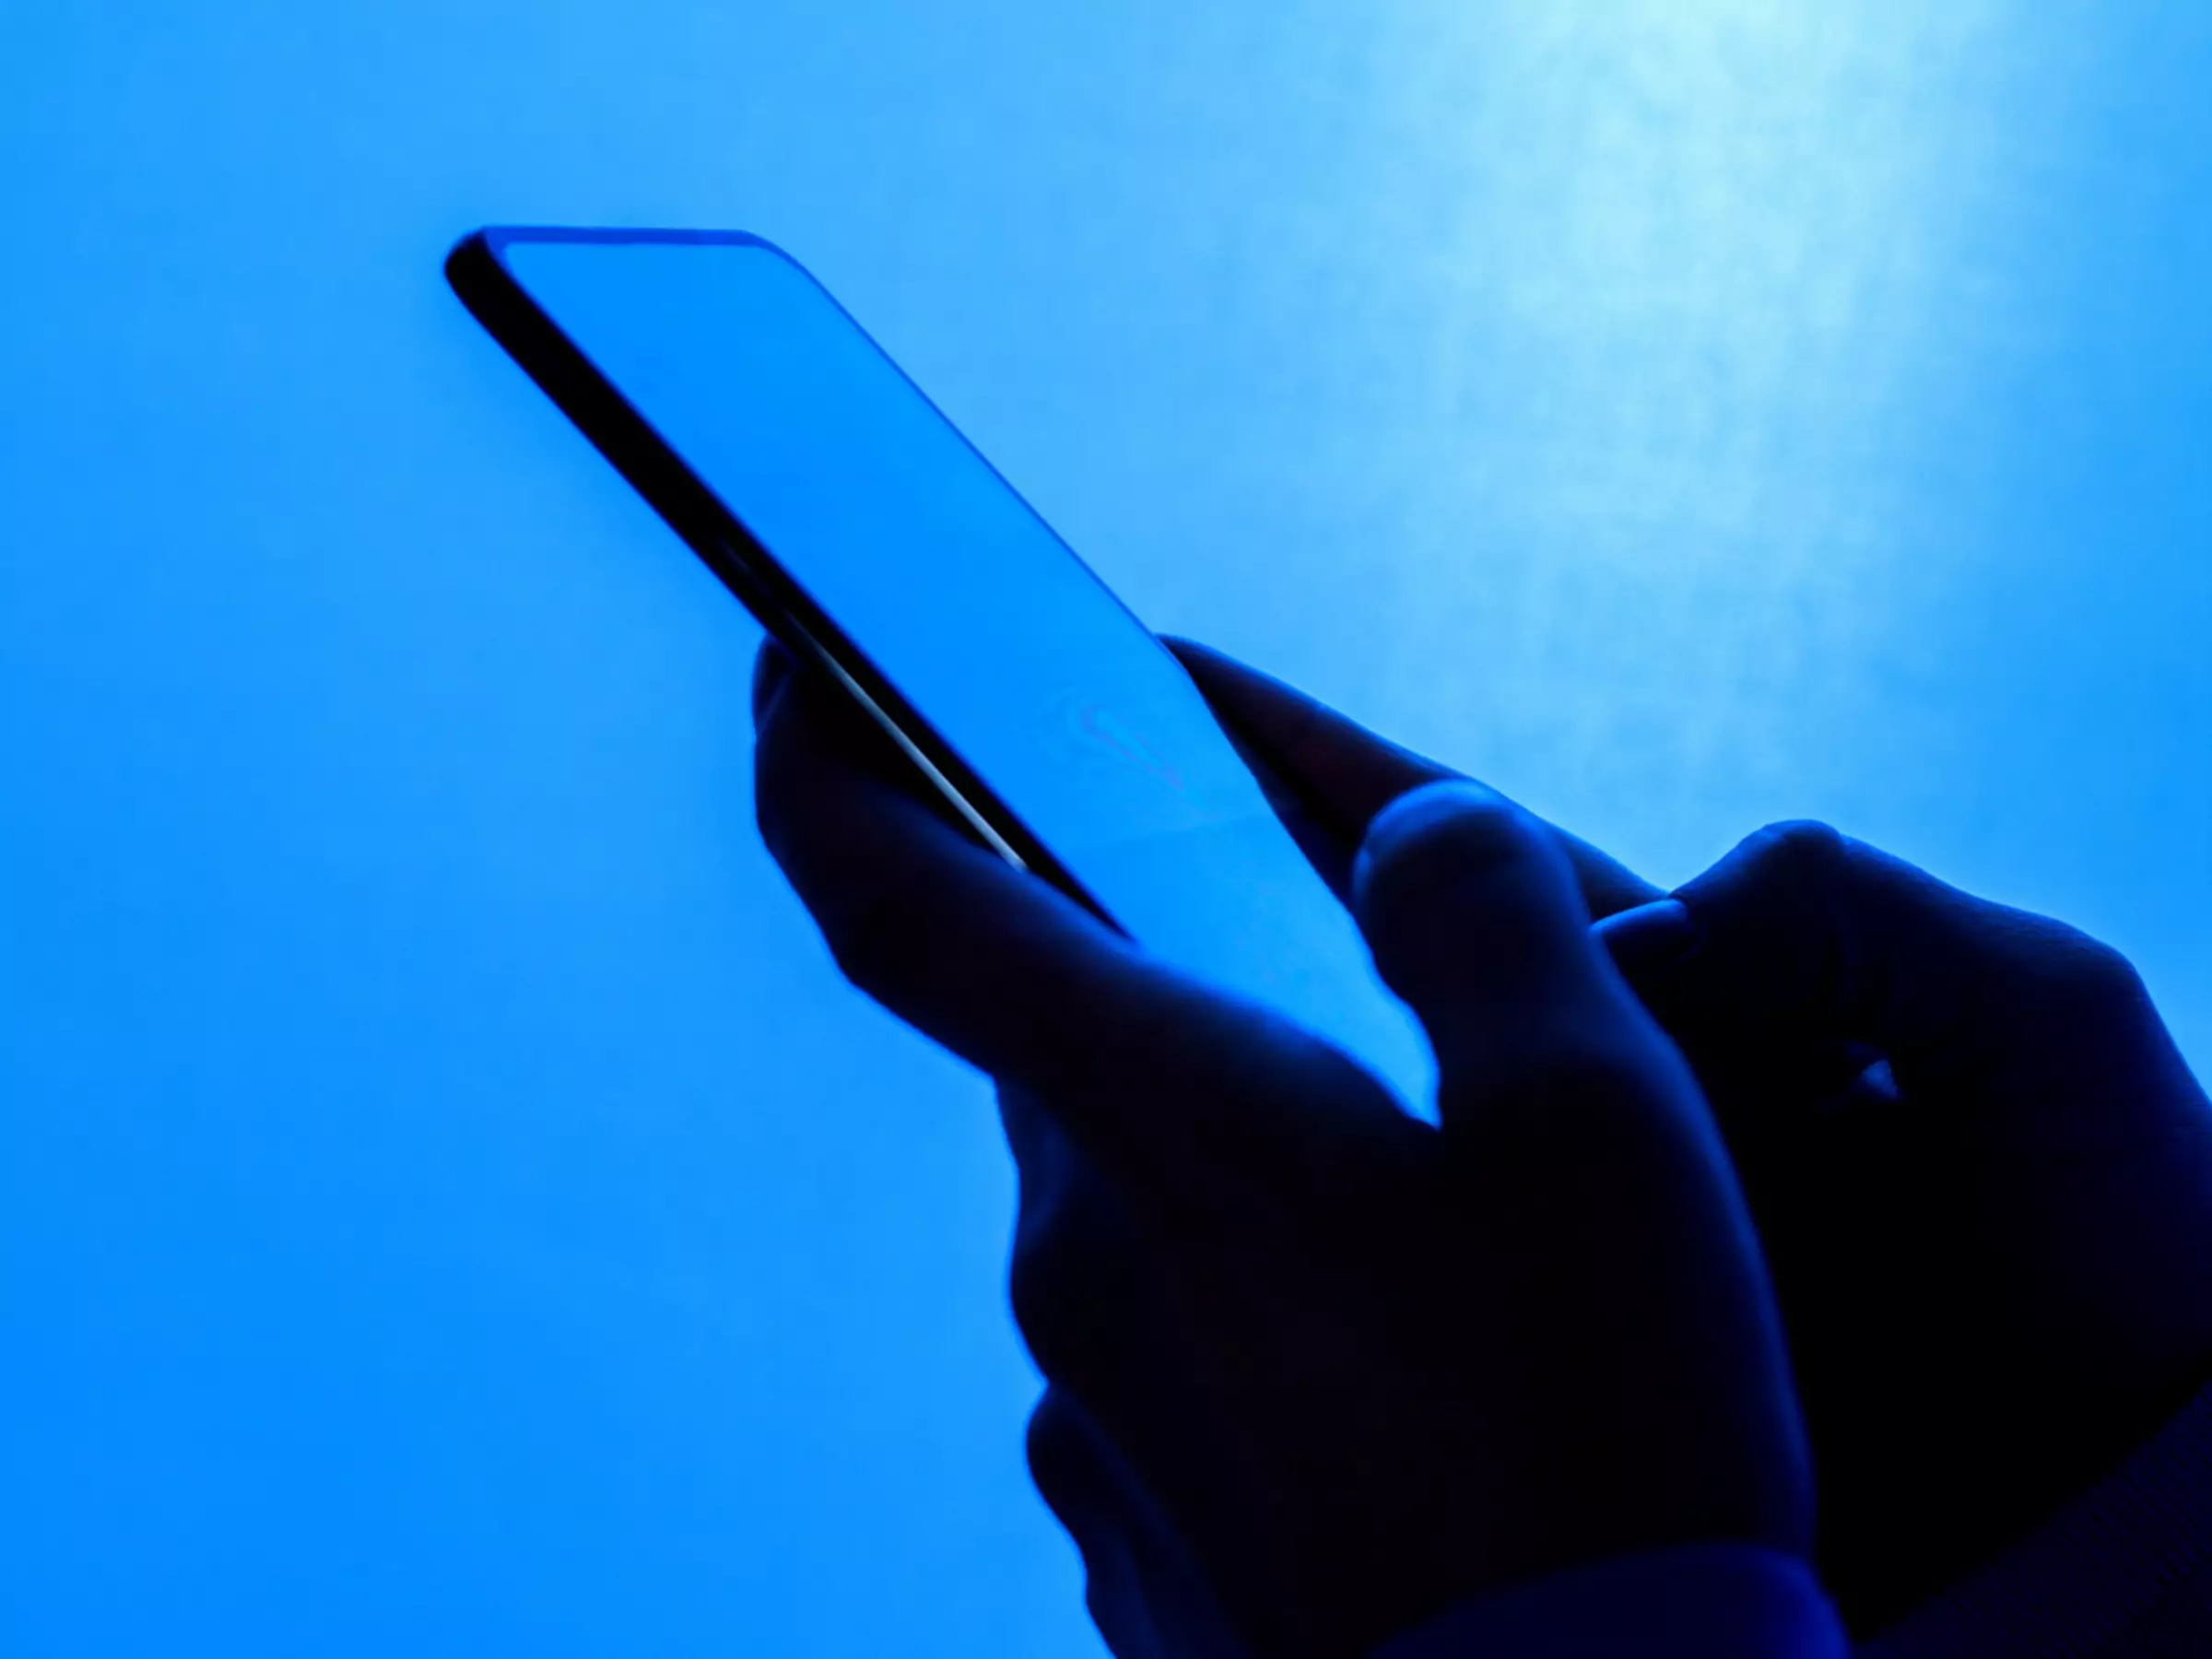 Bližnji posnetek rok, ki držijo telefon, na modrem ozadju